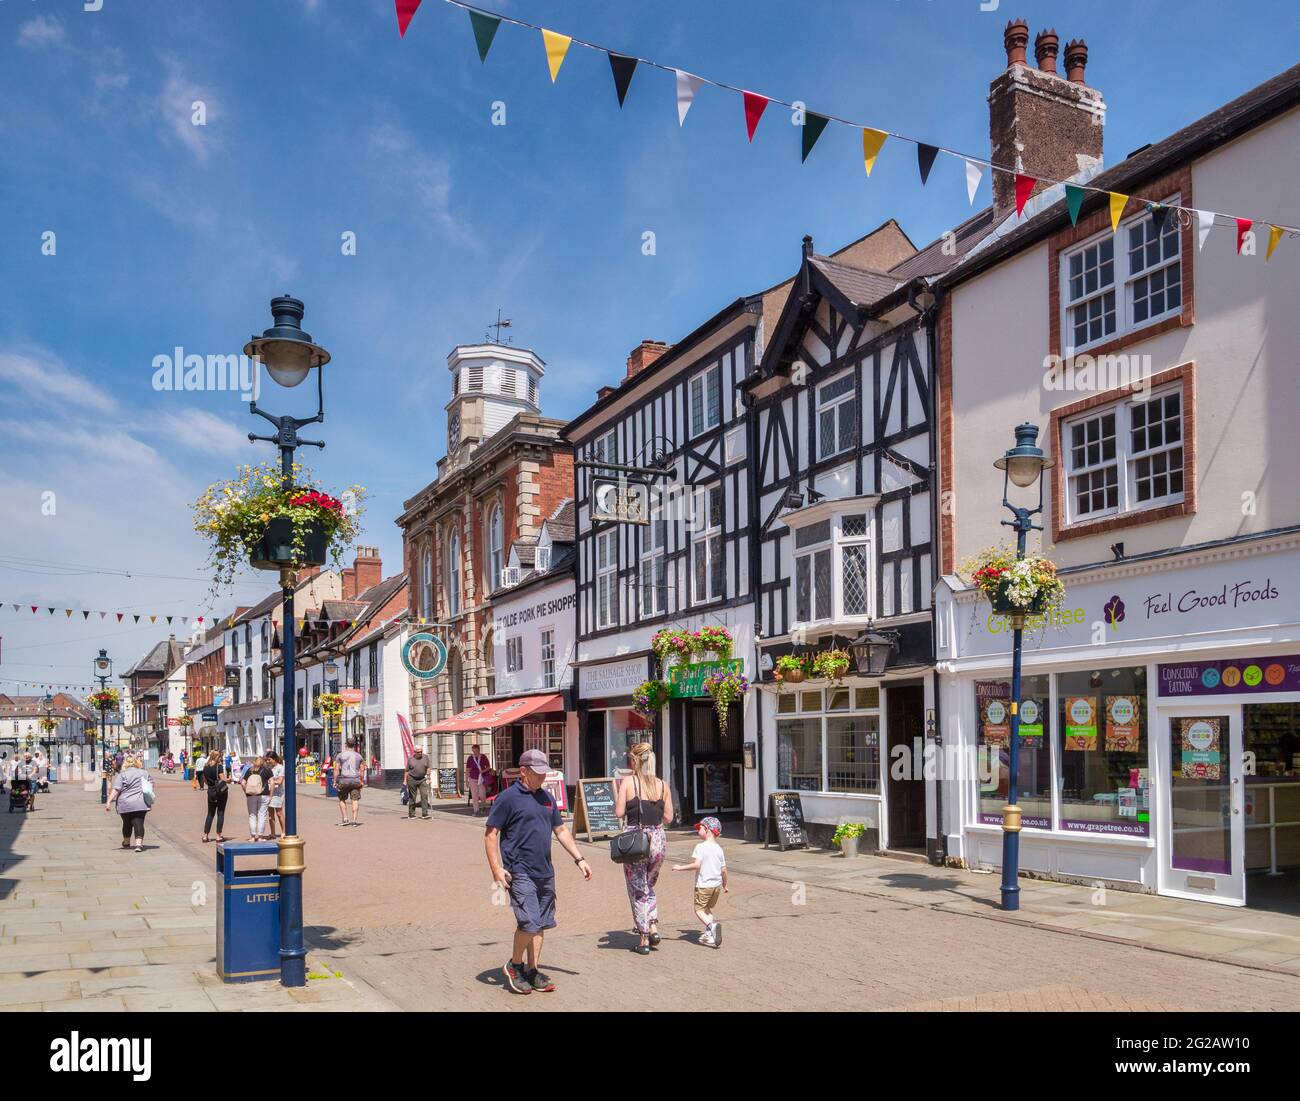 4 juillet 2019: Melton Mowbray, Leicestershire, Royaume-Uni - les gens magasinent dans la rue Nottingham lors d'une chaude journée d'été. Banque D'Images